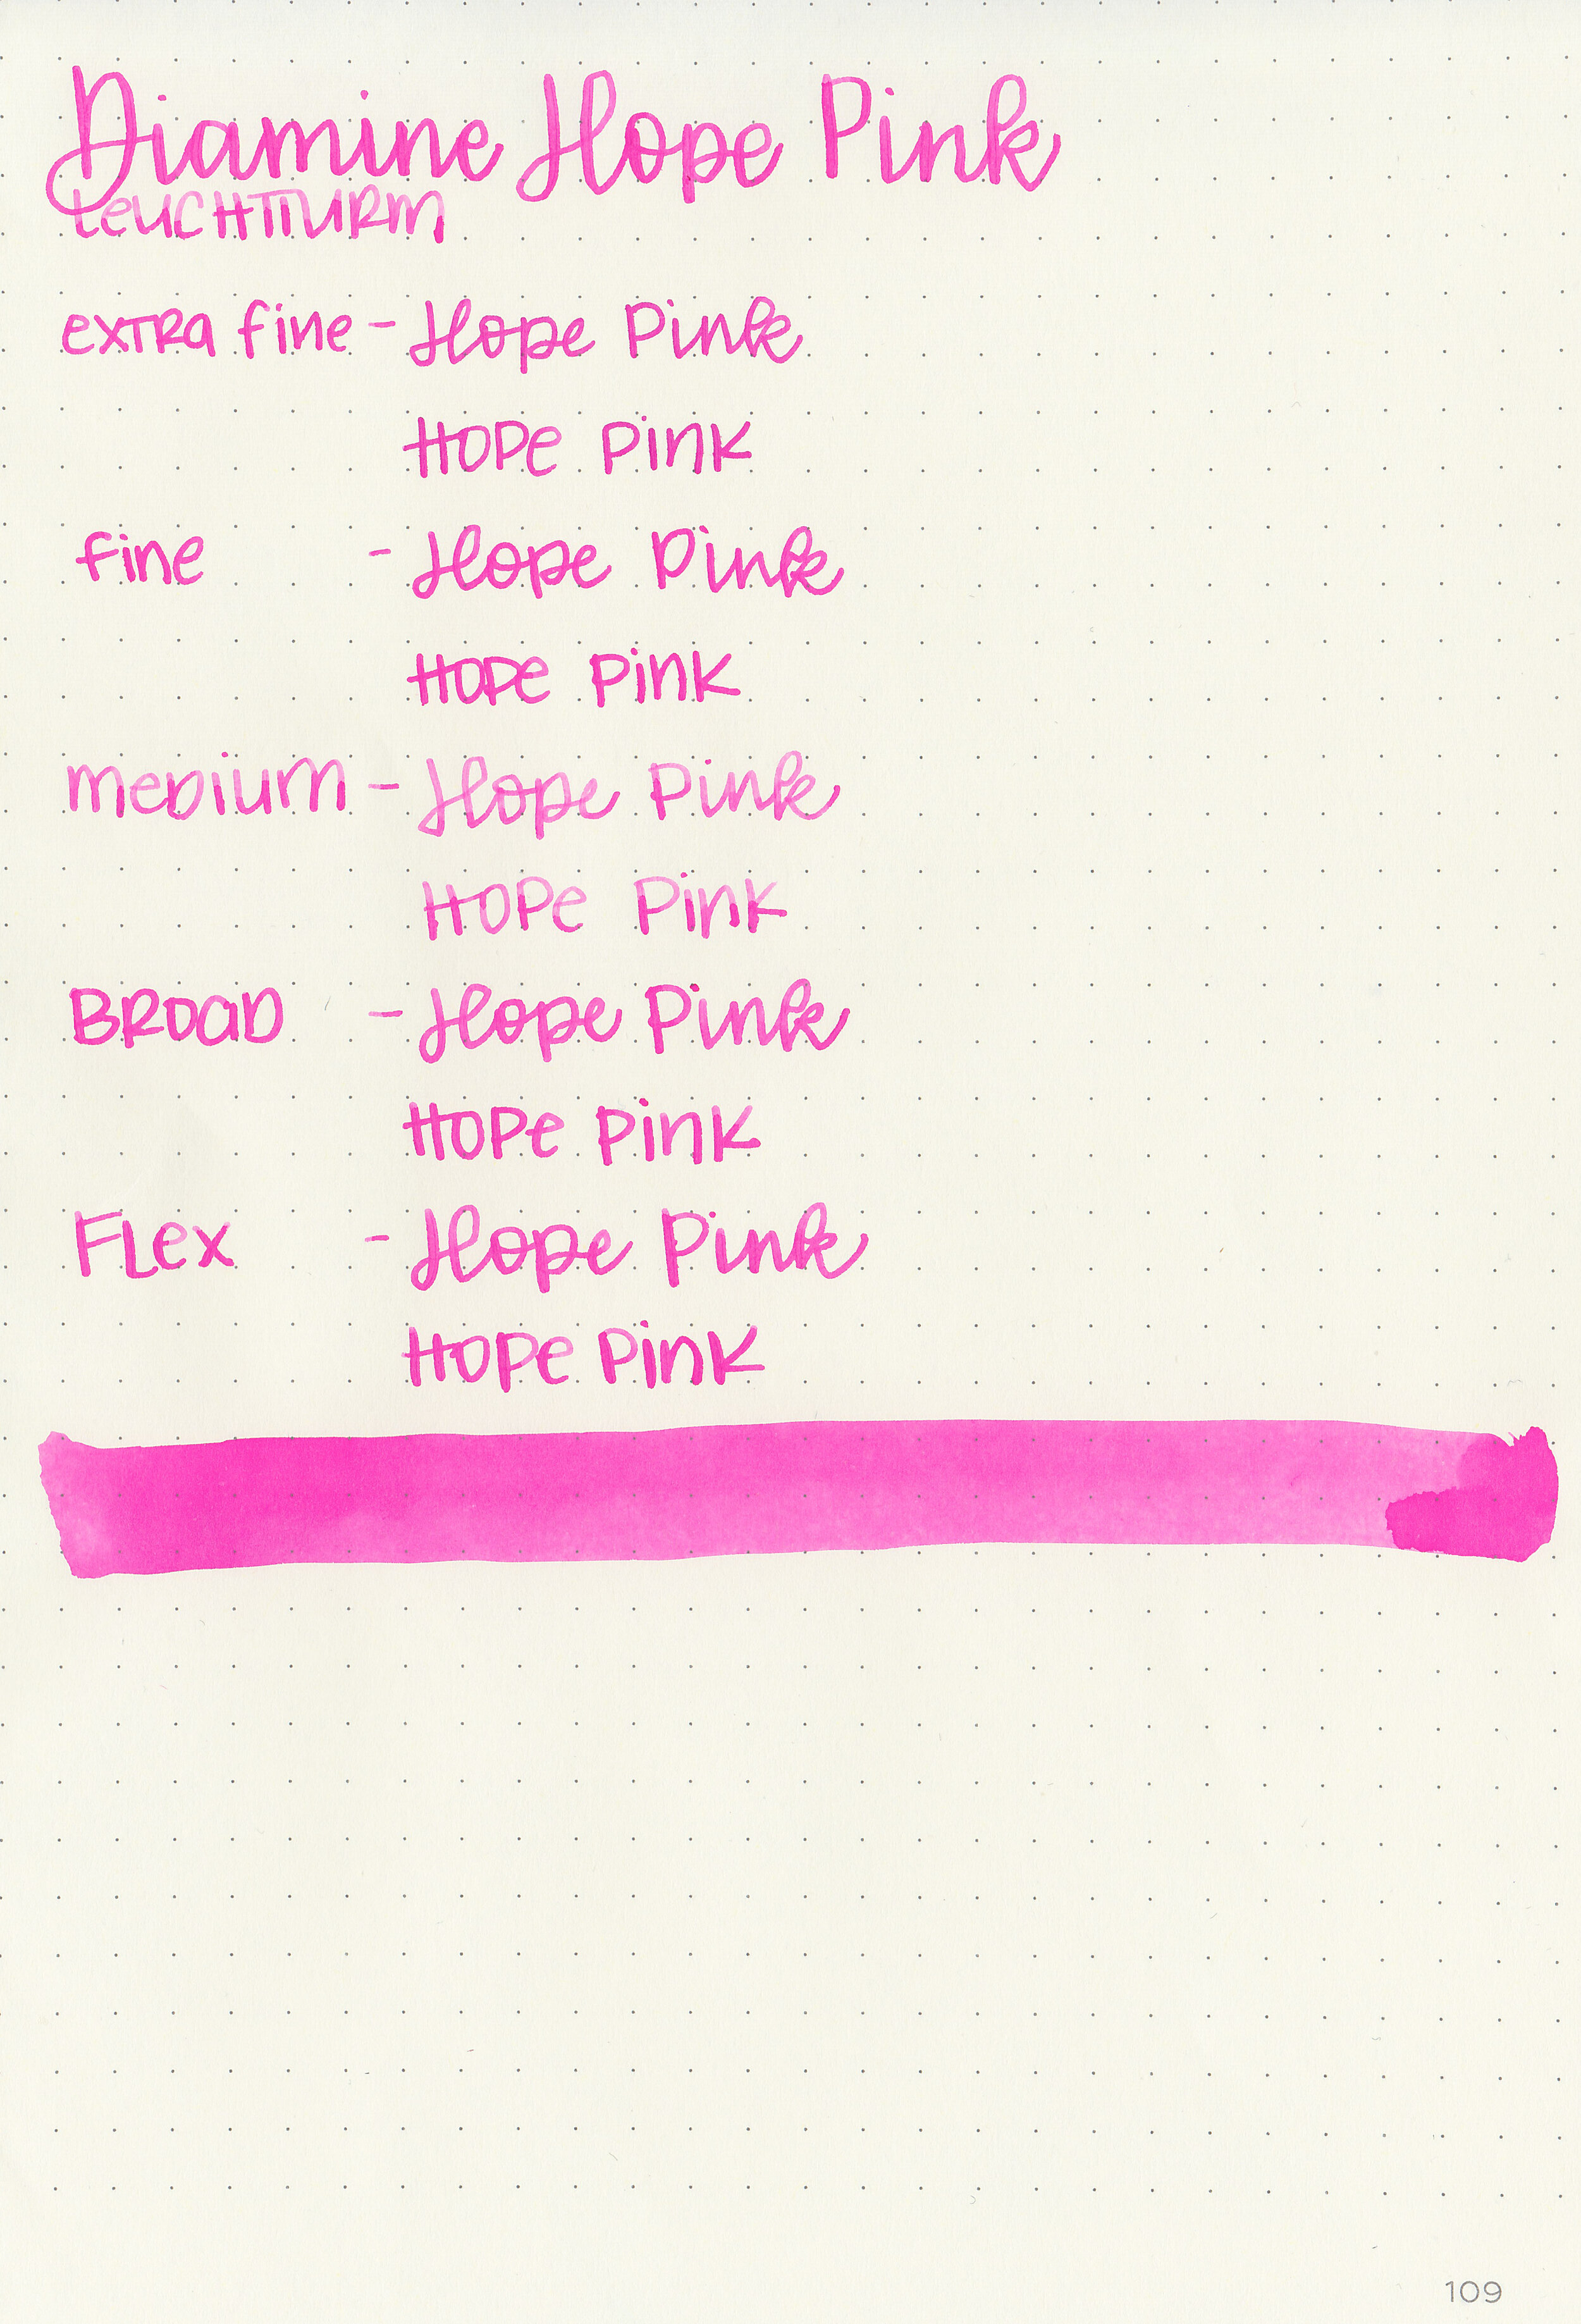 d-hope-pink-12.jpg